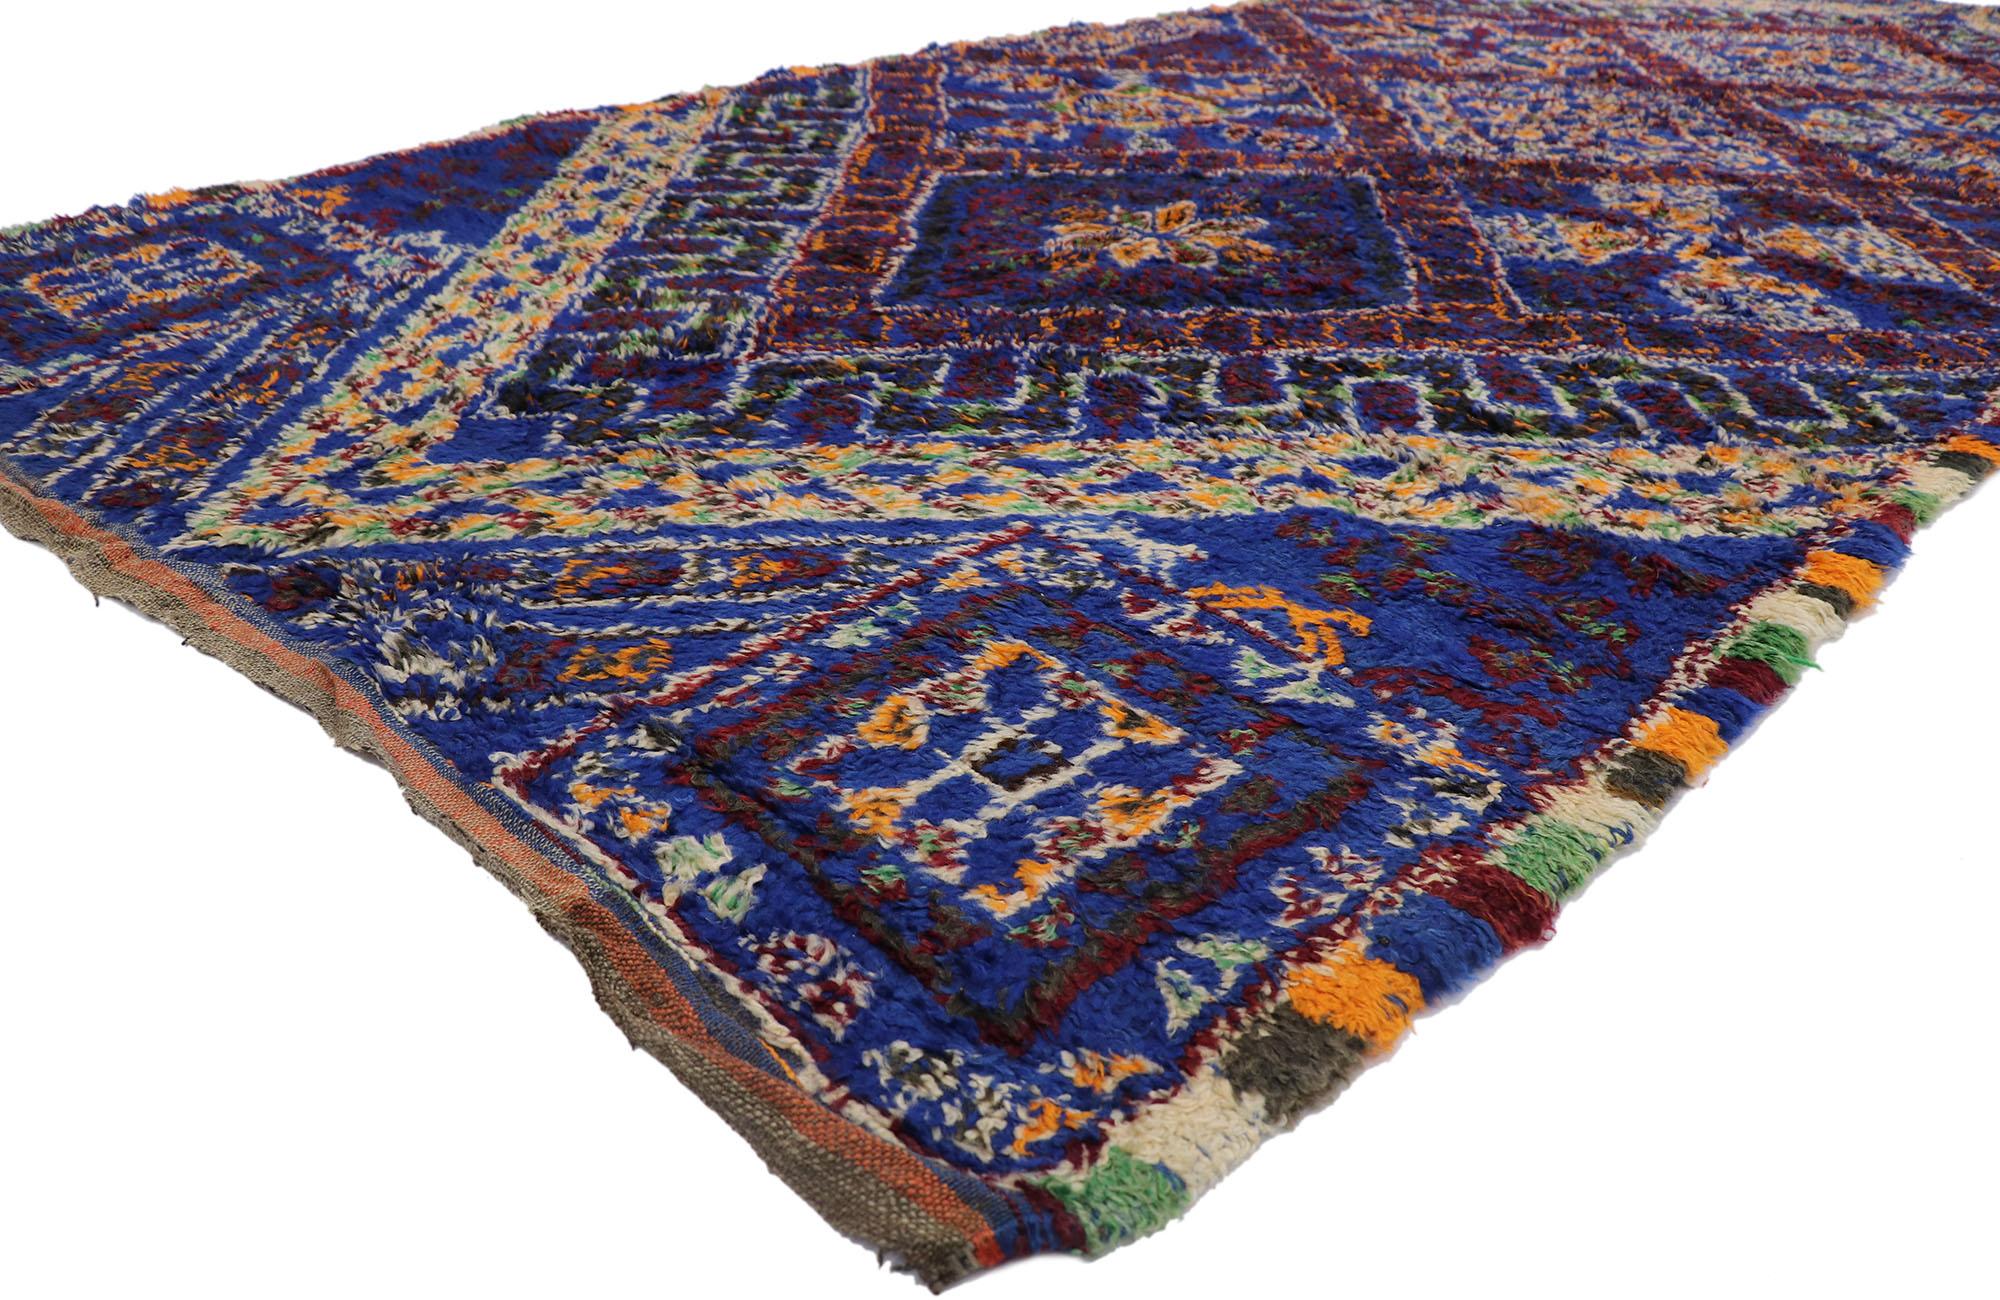 21331 Marokkanischer Teppich Vintage Blau, 06'01 x 13'07. Moderner Stil trifft auf nomadischen Charme in diesem handgeknüpften blauen marokkanischen Wollteppich. Das auffällige Tribal-Muster und die lebendigen Farben, die in dieses Stück eingewebt